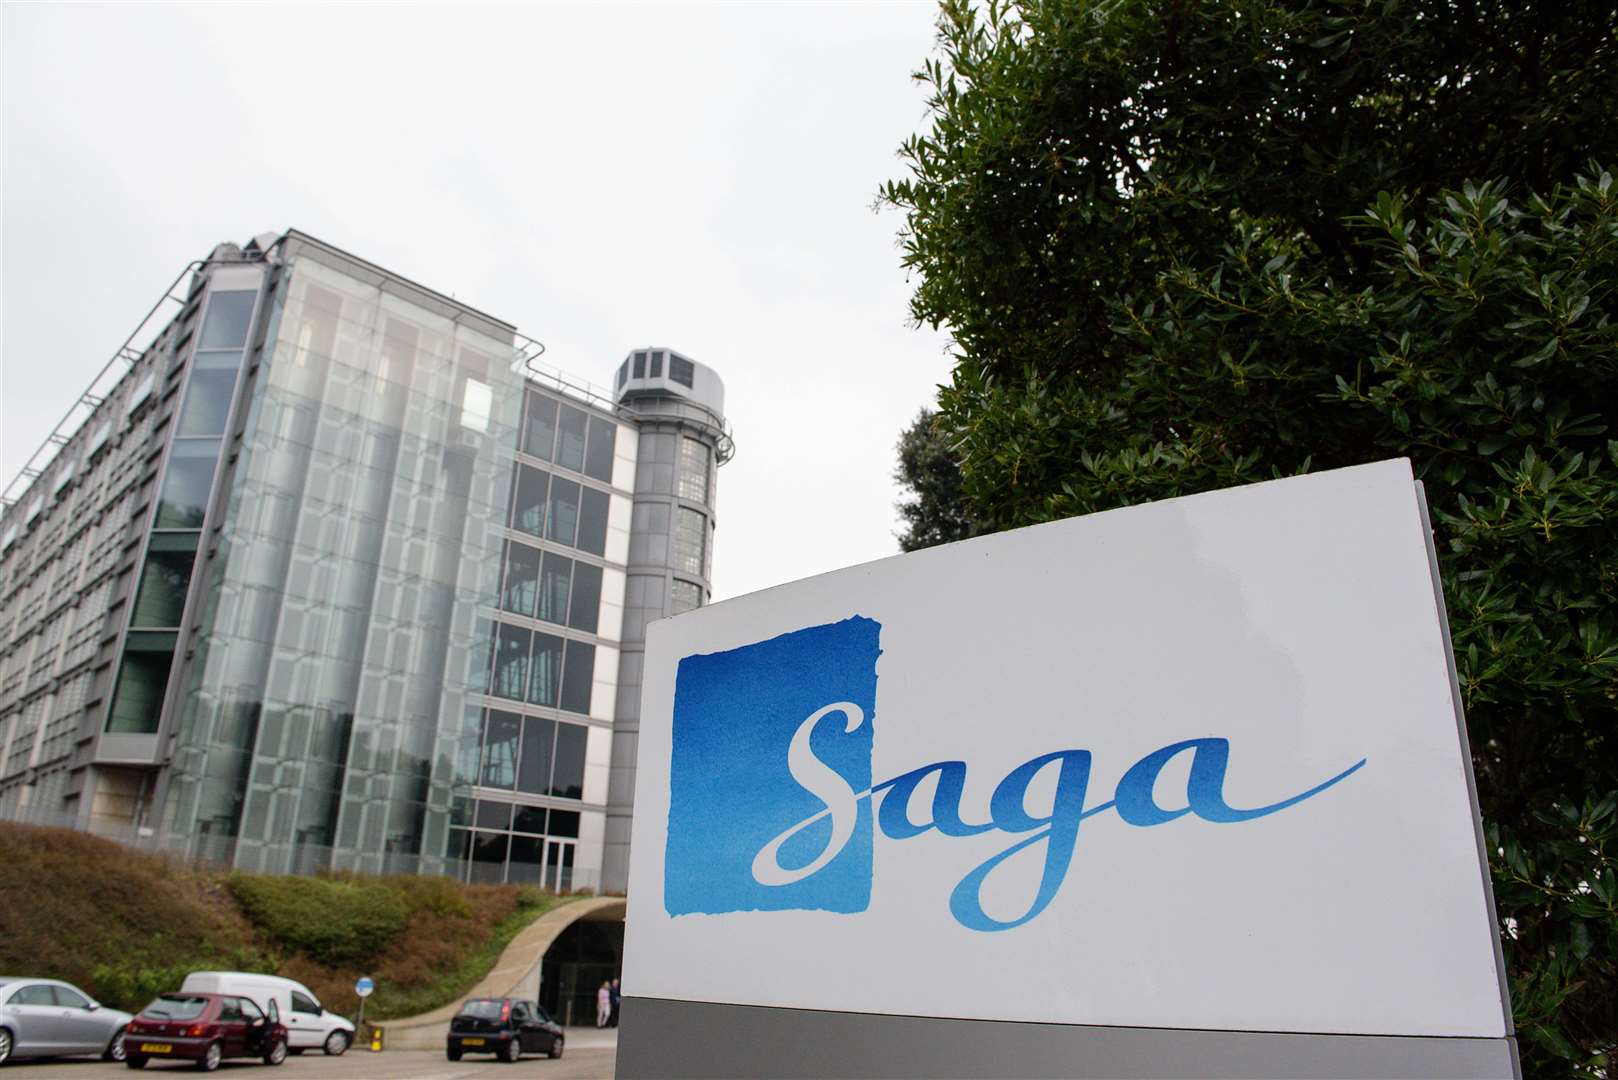 Saga building at Enbrook Park in Sandgate